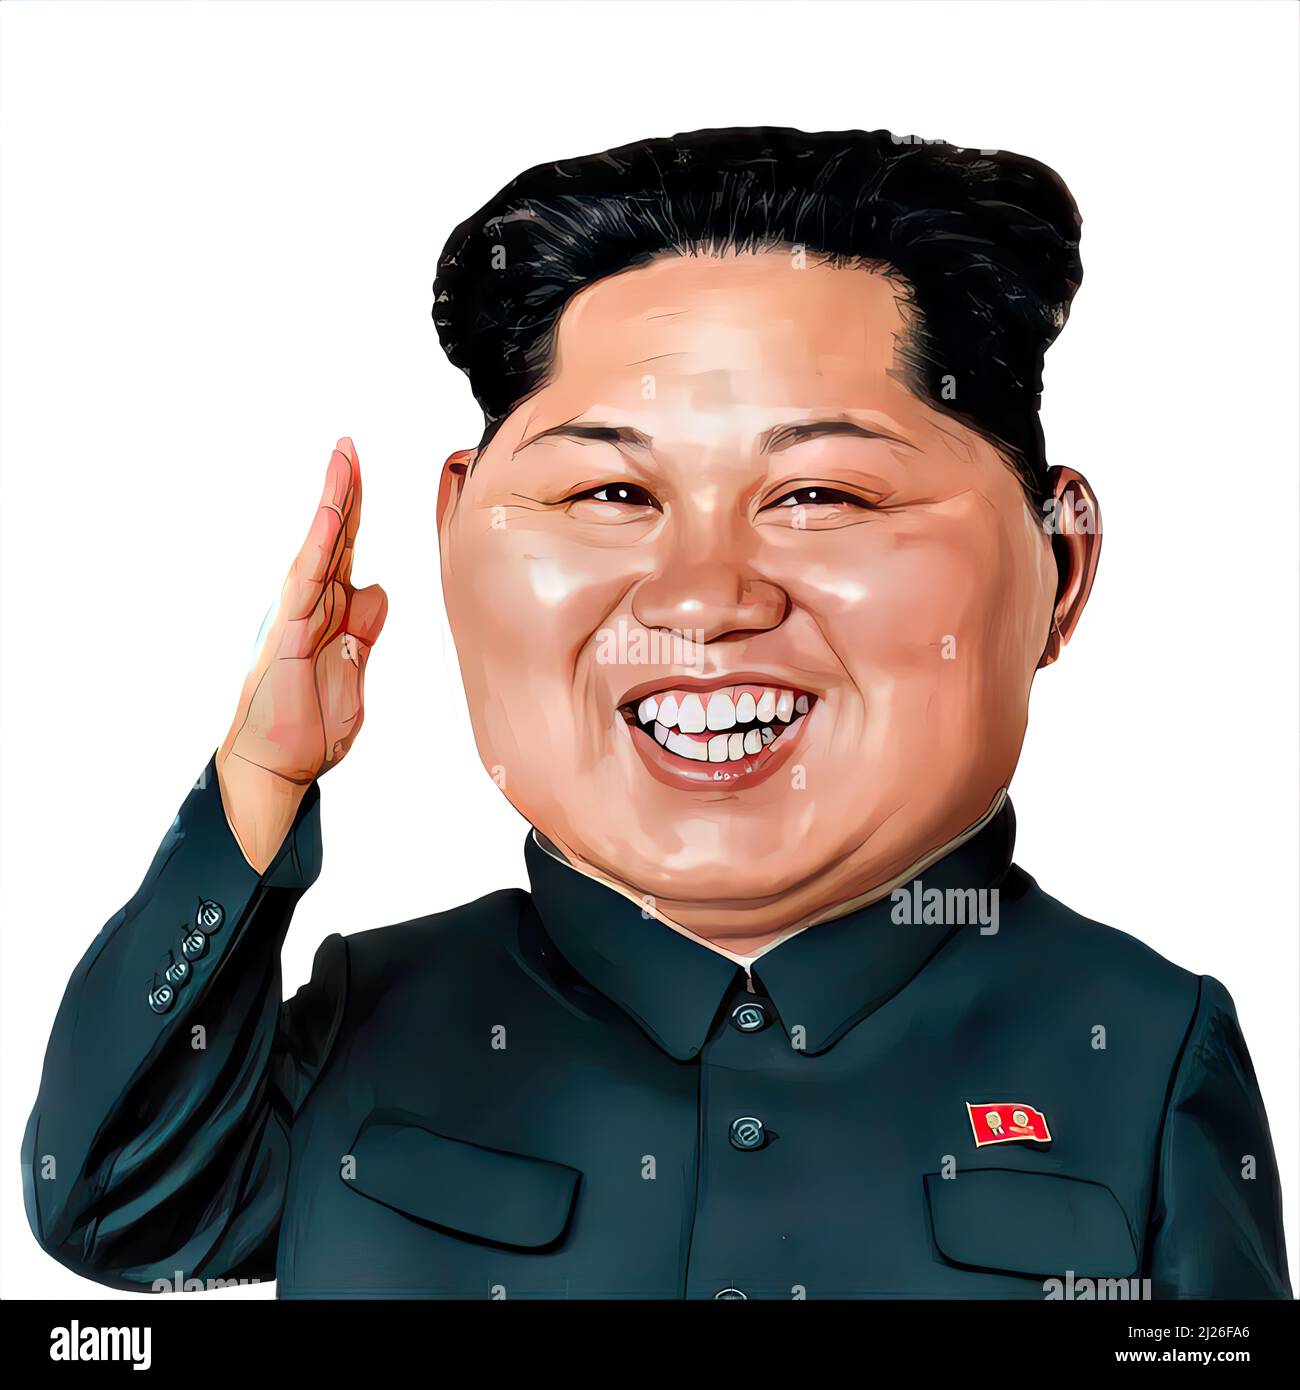 Le président nord-coréen, dictateur Kim Jong un, caricature visage, saluant, souriant Banque D'Images